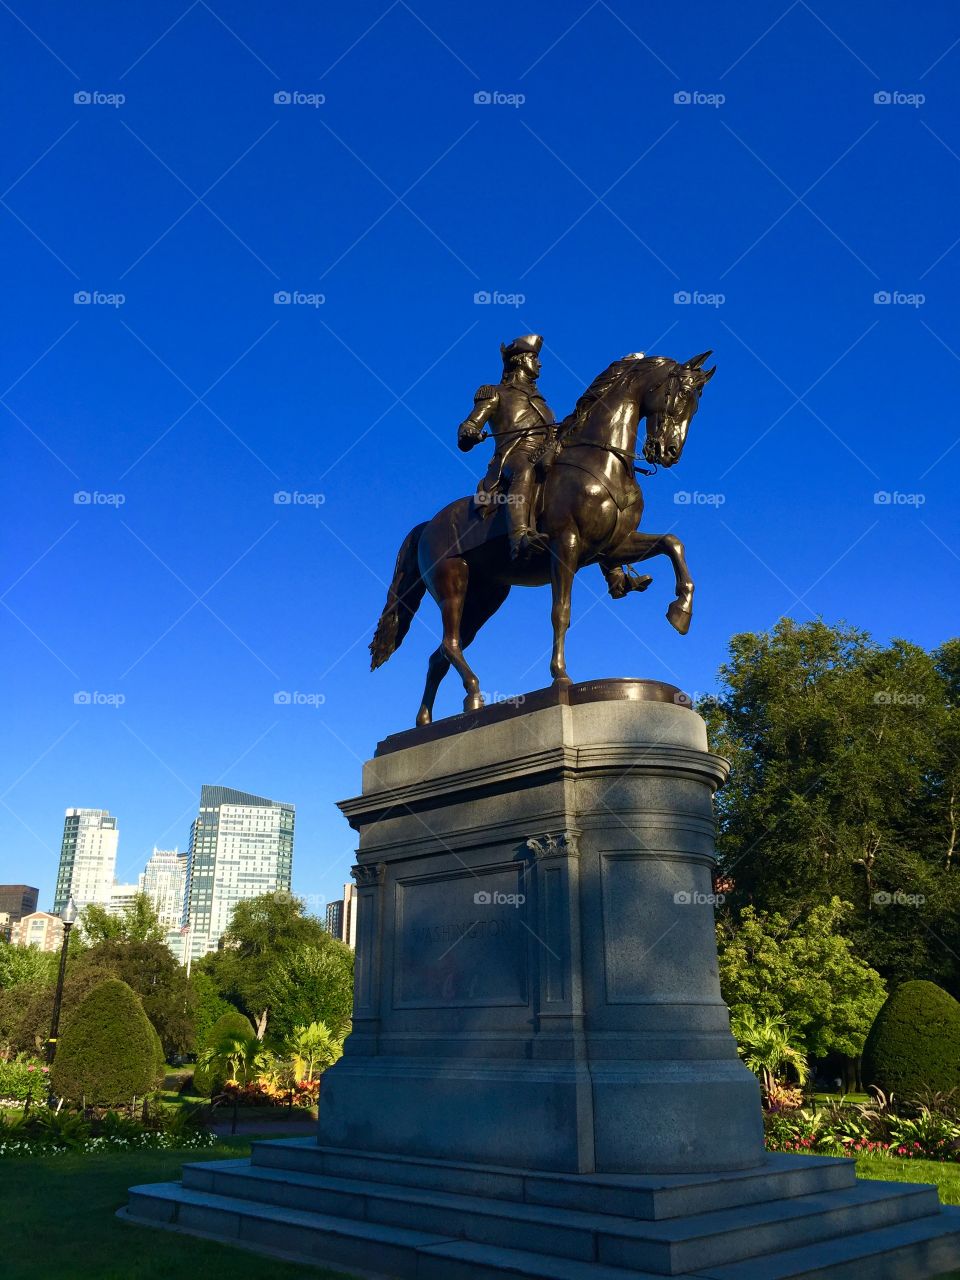 Washington statue 